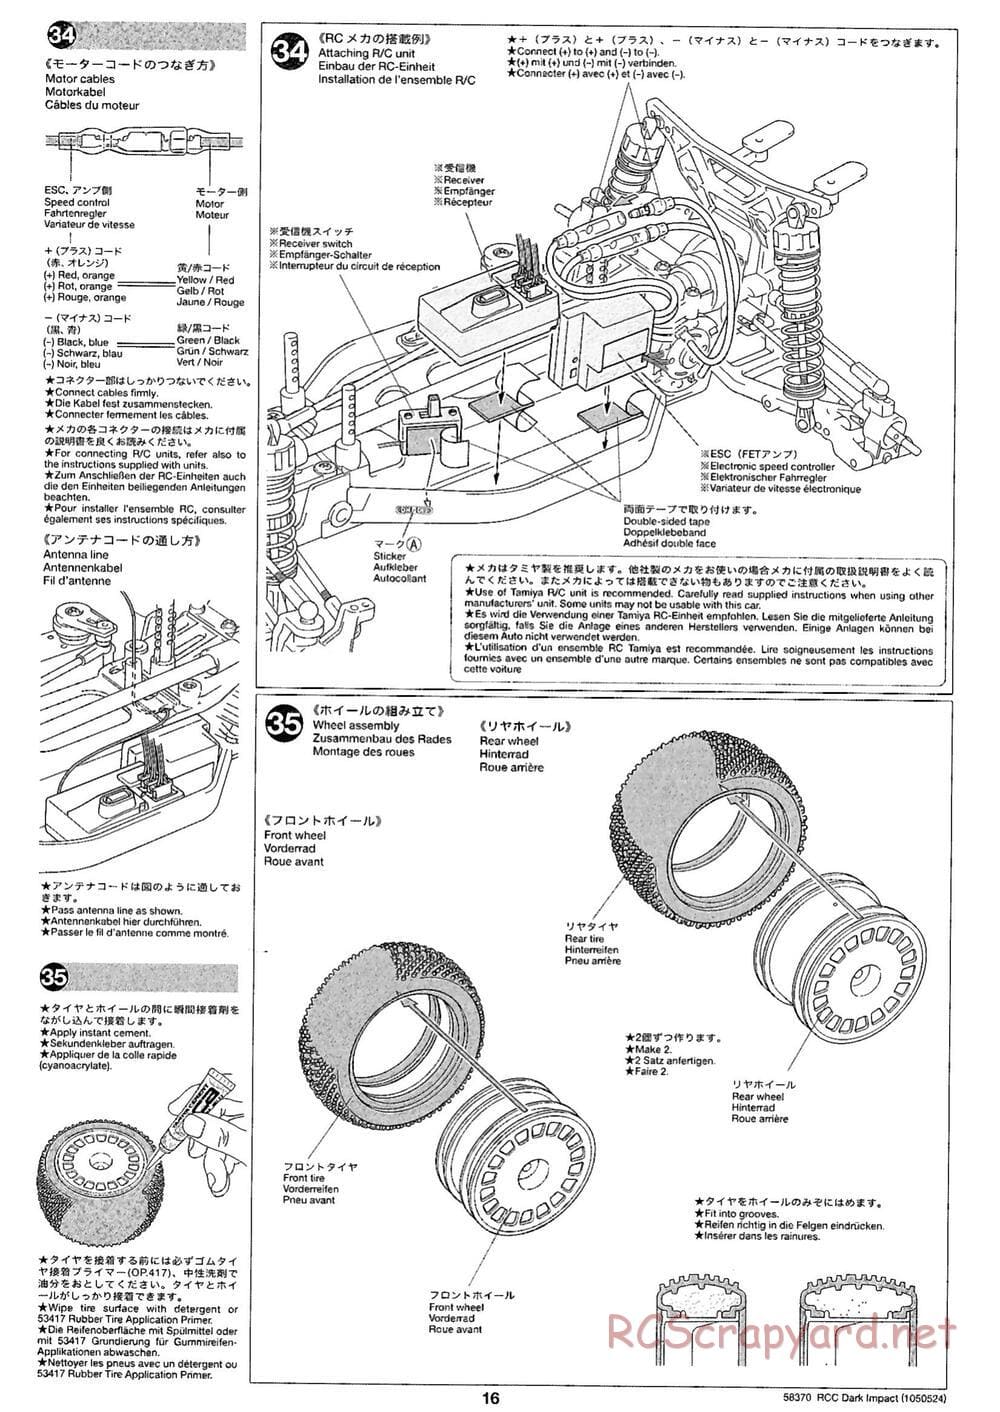 Tamiya - Dark Impact Chassis - Manual - Page 16